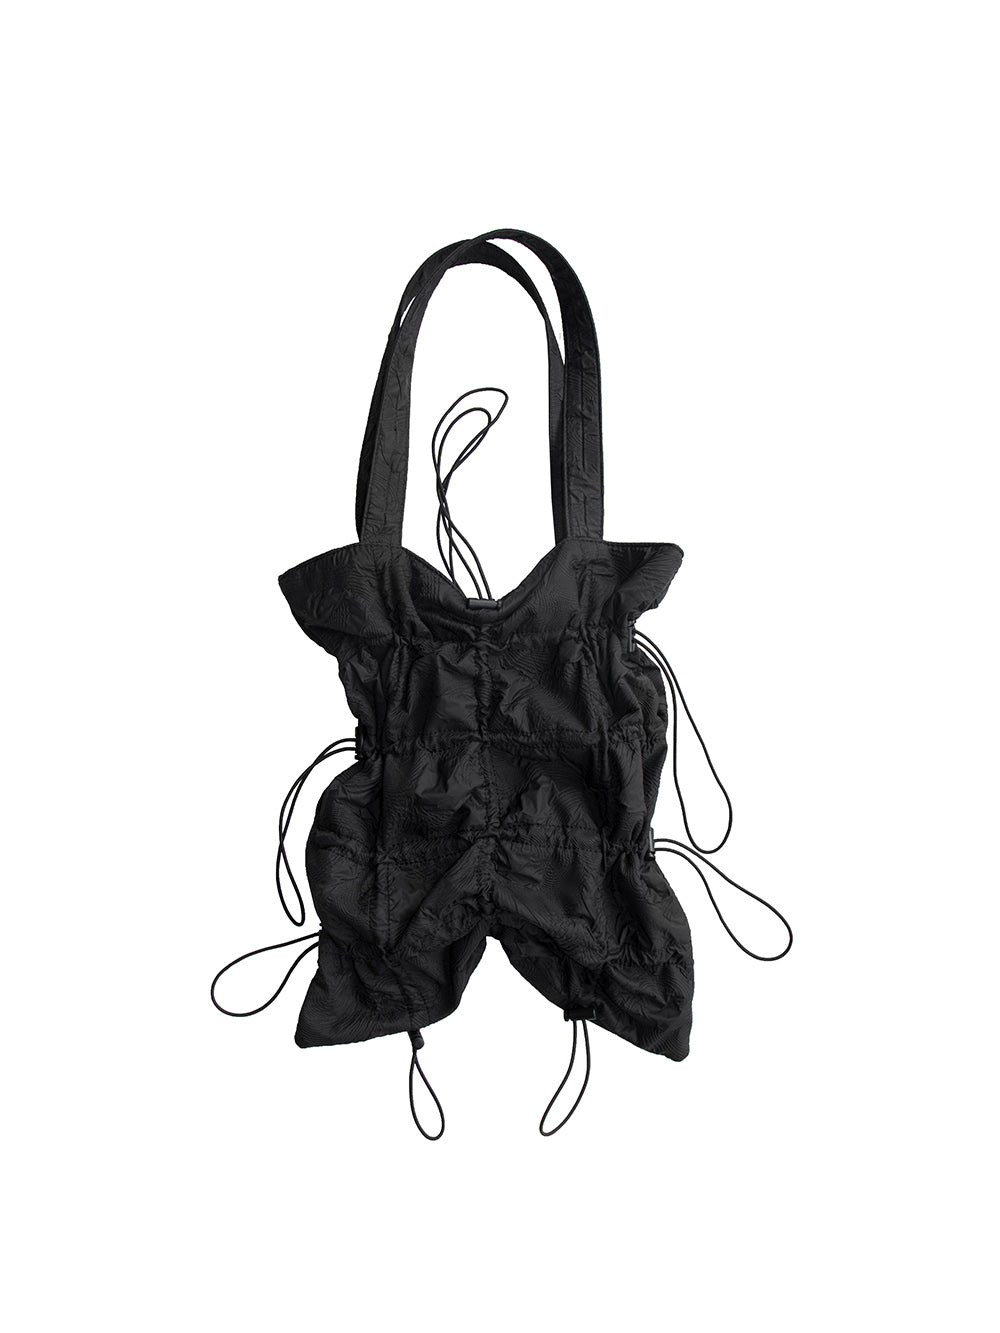 MUKTANK X COOLOTHES Flower Embossed Texture Drawstring Deformation Black Shoulder Bag